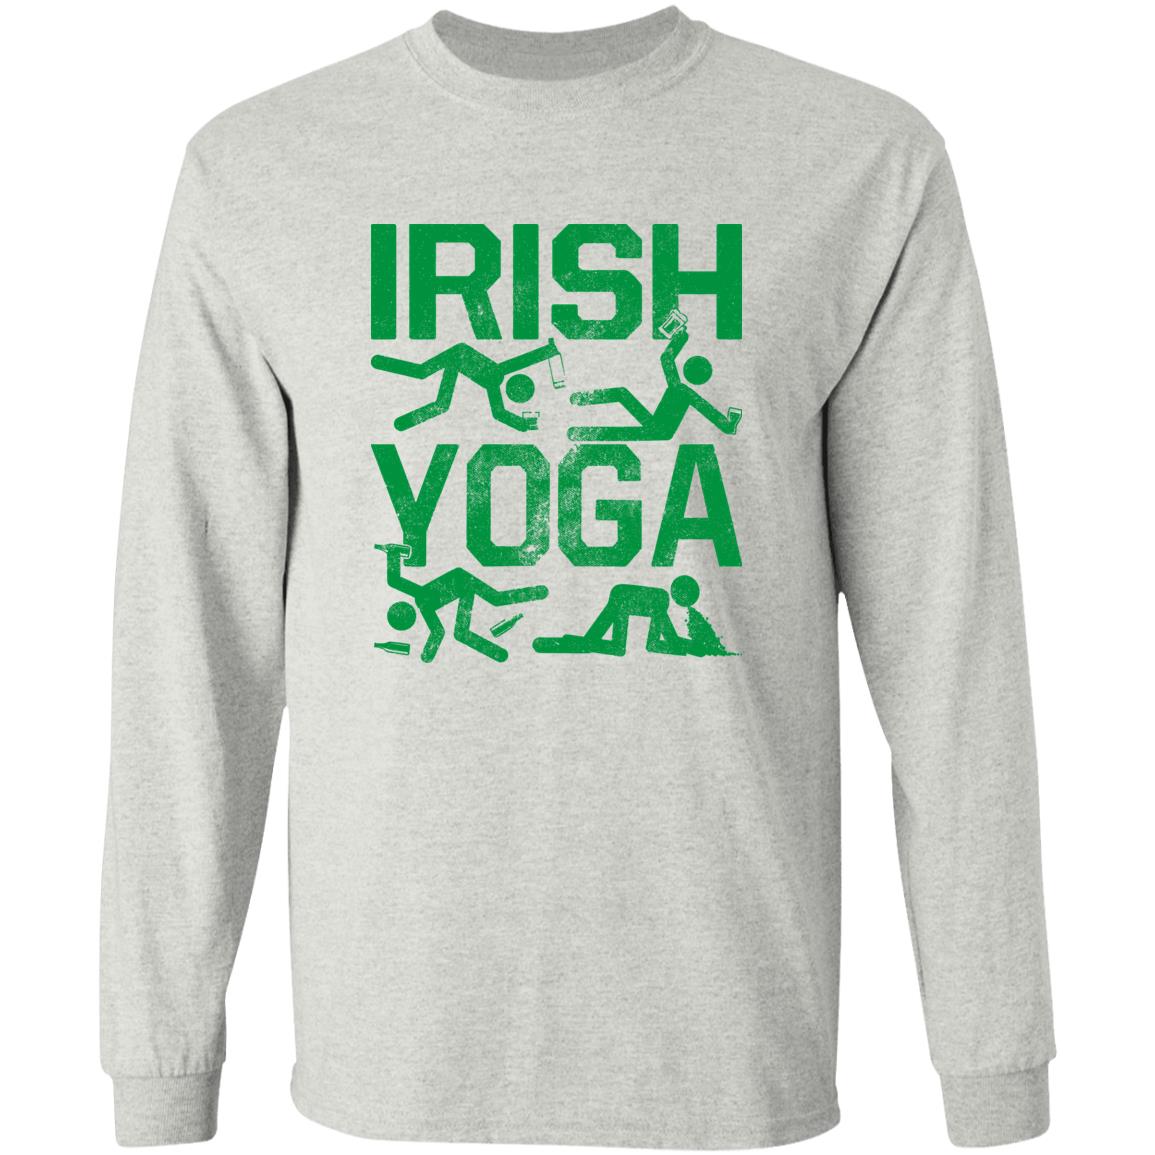 Irish Yoga Tee Shirts - CRW Flags Store in Glen Burnie, Maryland